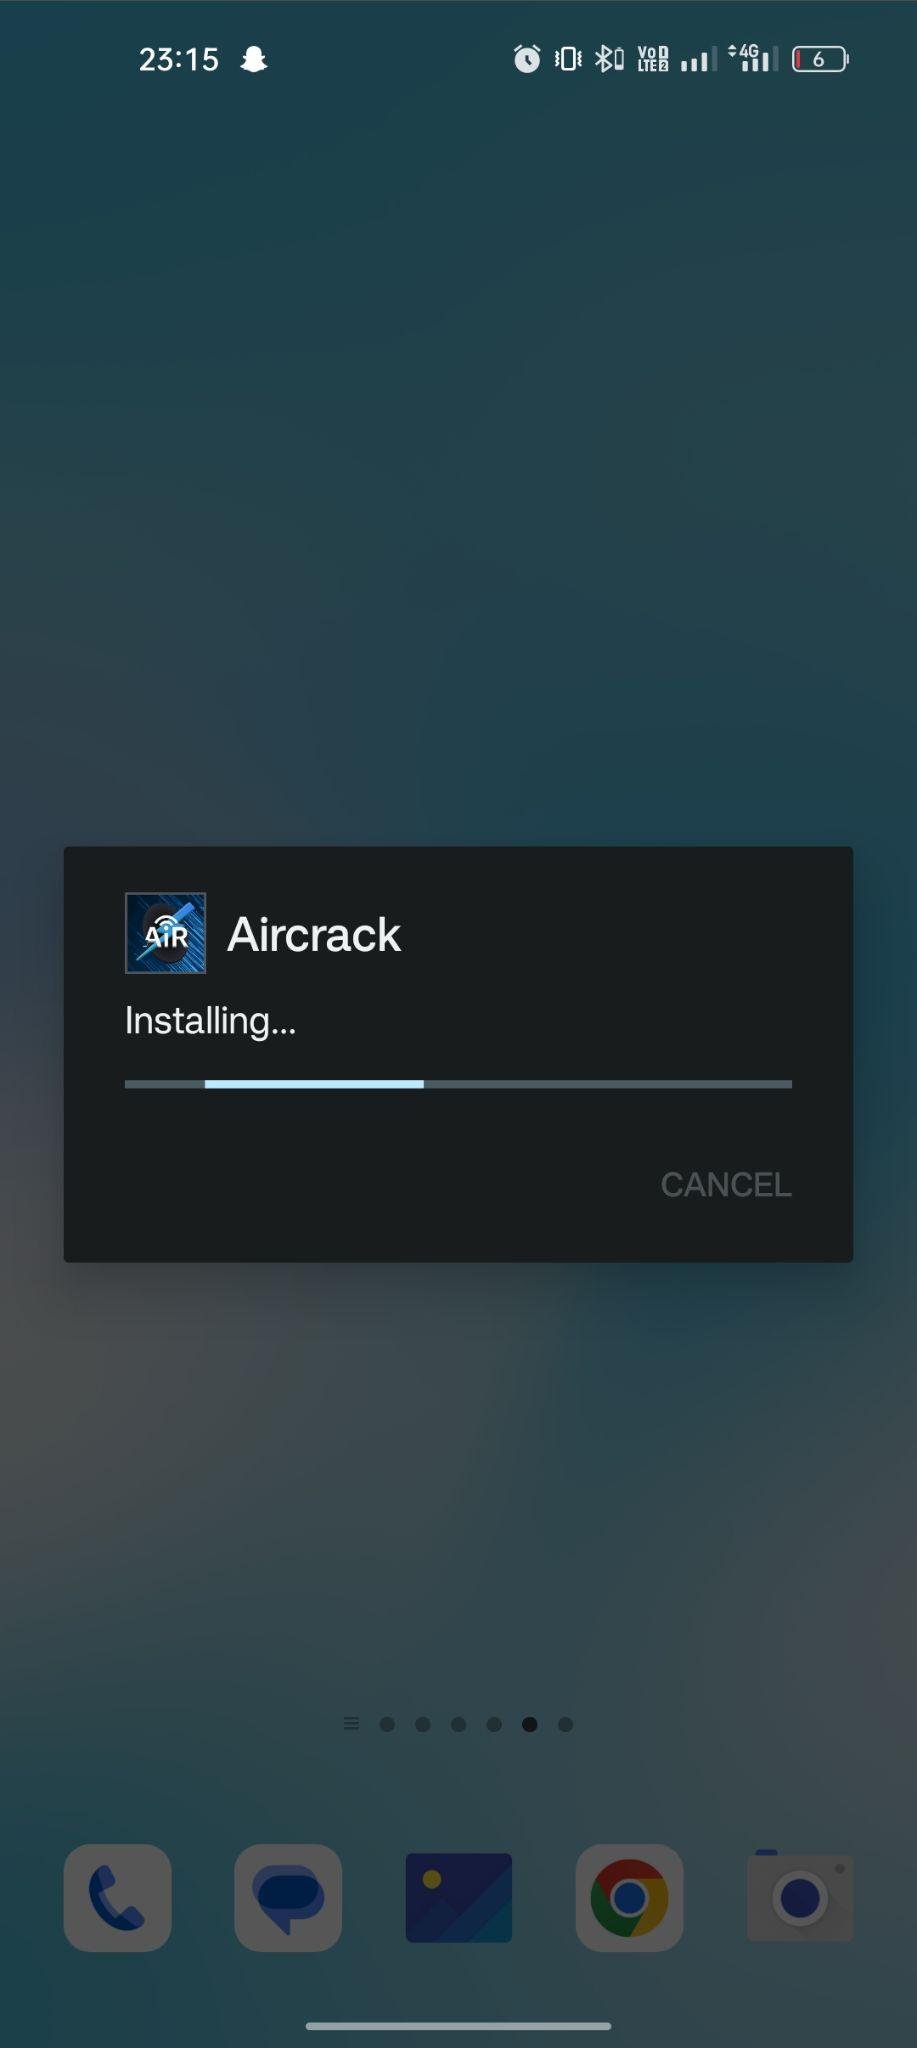 AirCrack apk installing